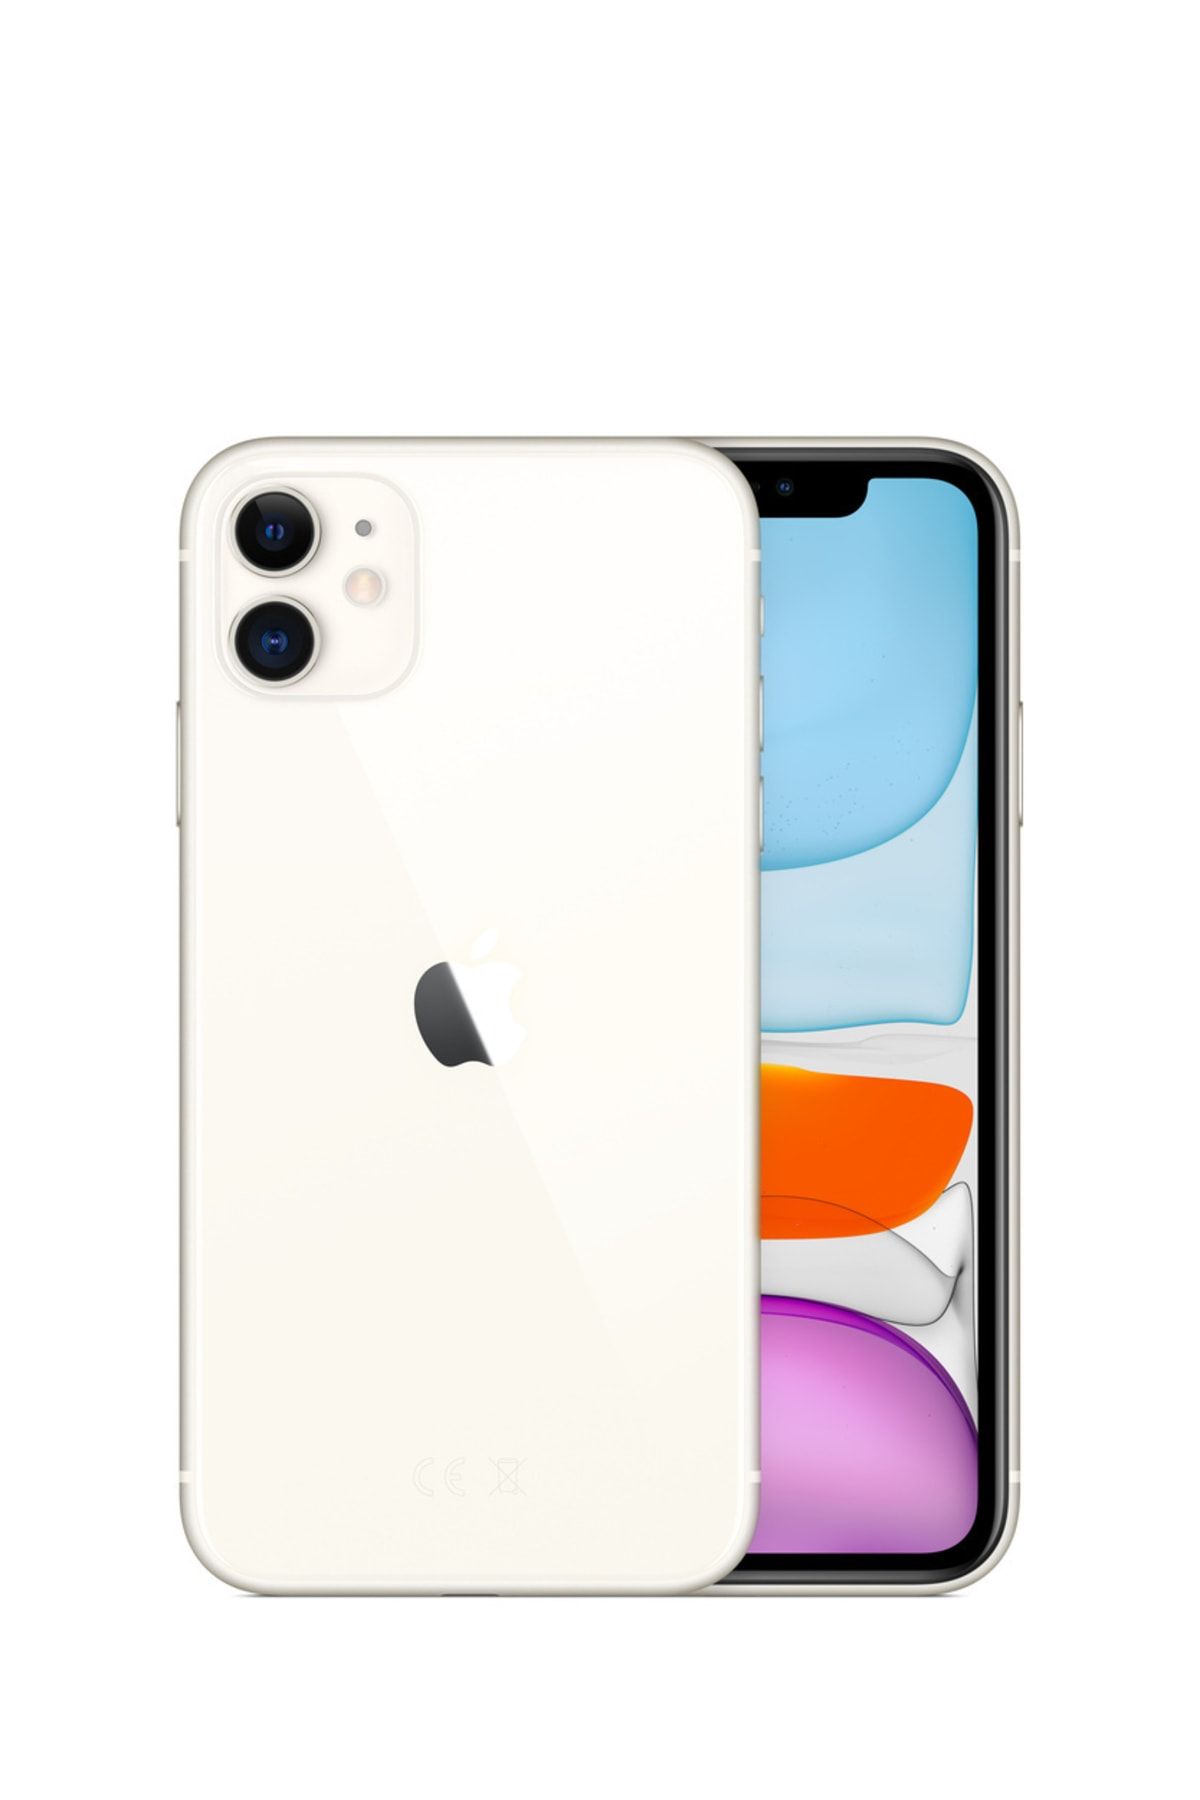 Apple Yenilenmiş iPhone 11 64 GB Beyaz Cep Telefonu (12 Ay Garantili) - B Kalite